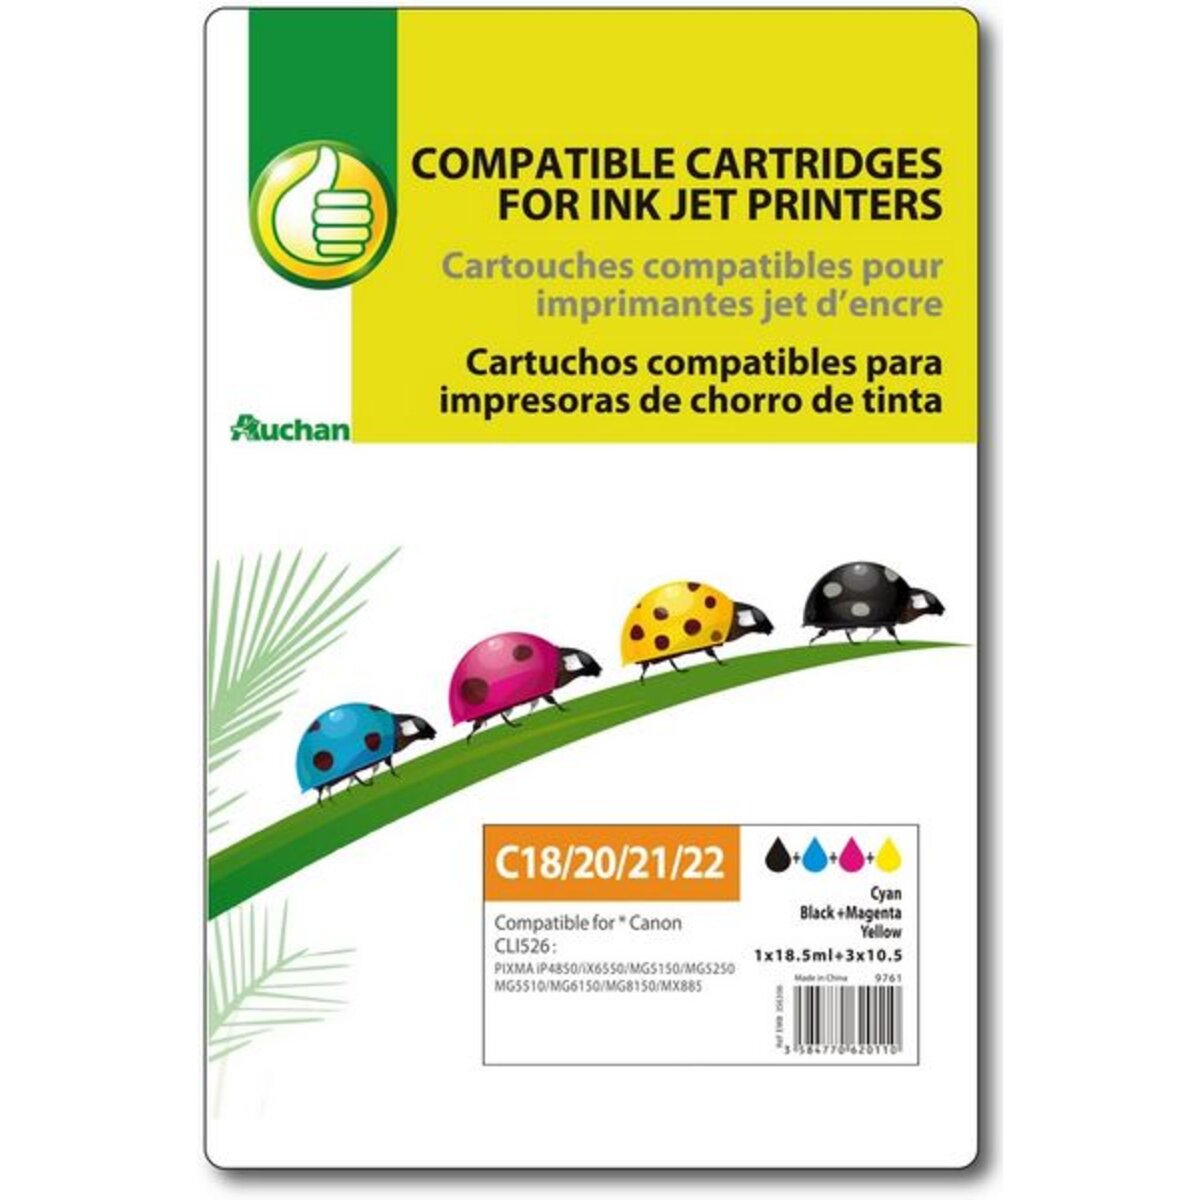 POUCE Cartouche d'encre compatible CANON CLI526 C18/20/21/22 - Noir Cyan Magenta & Jaune